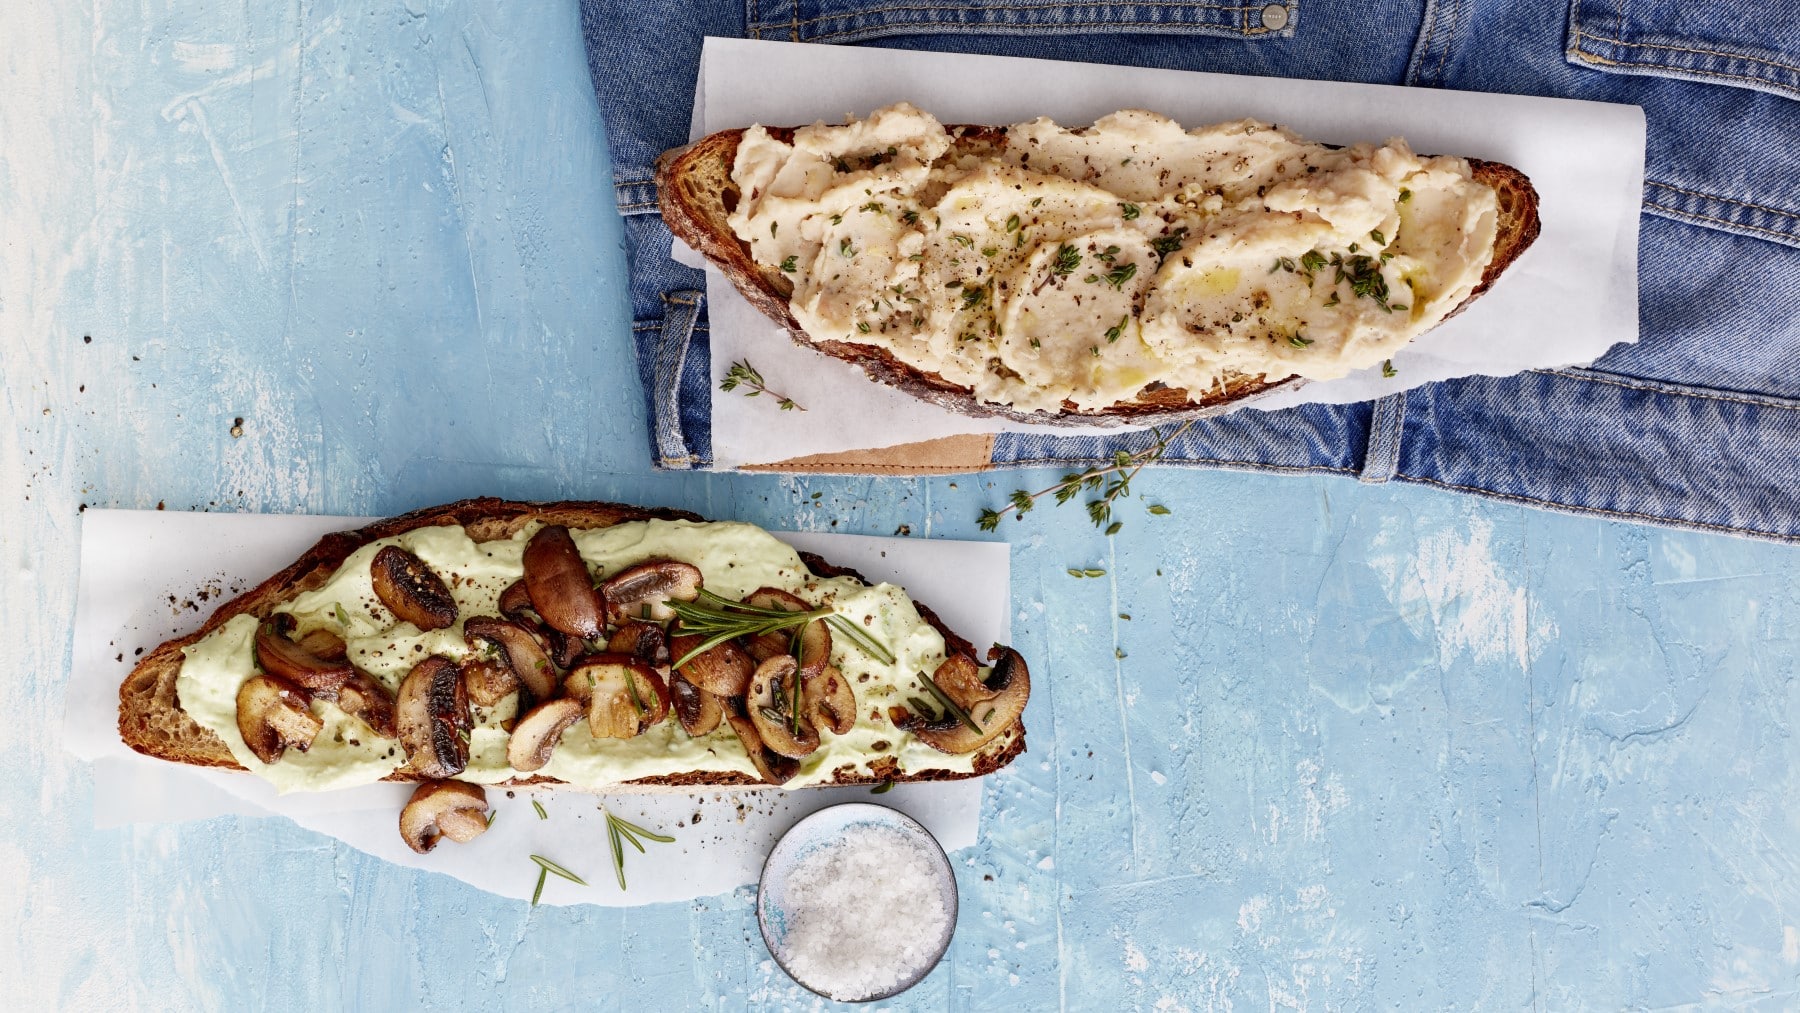 Zweierlei getoastetes Hirnfutter: Je eine Scheibe Brot mit Bohnenmus und Avocado und Pilzen auf weißen Unterlagen, darunter blaue Fläche.